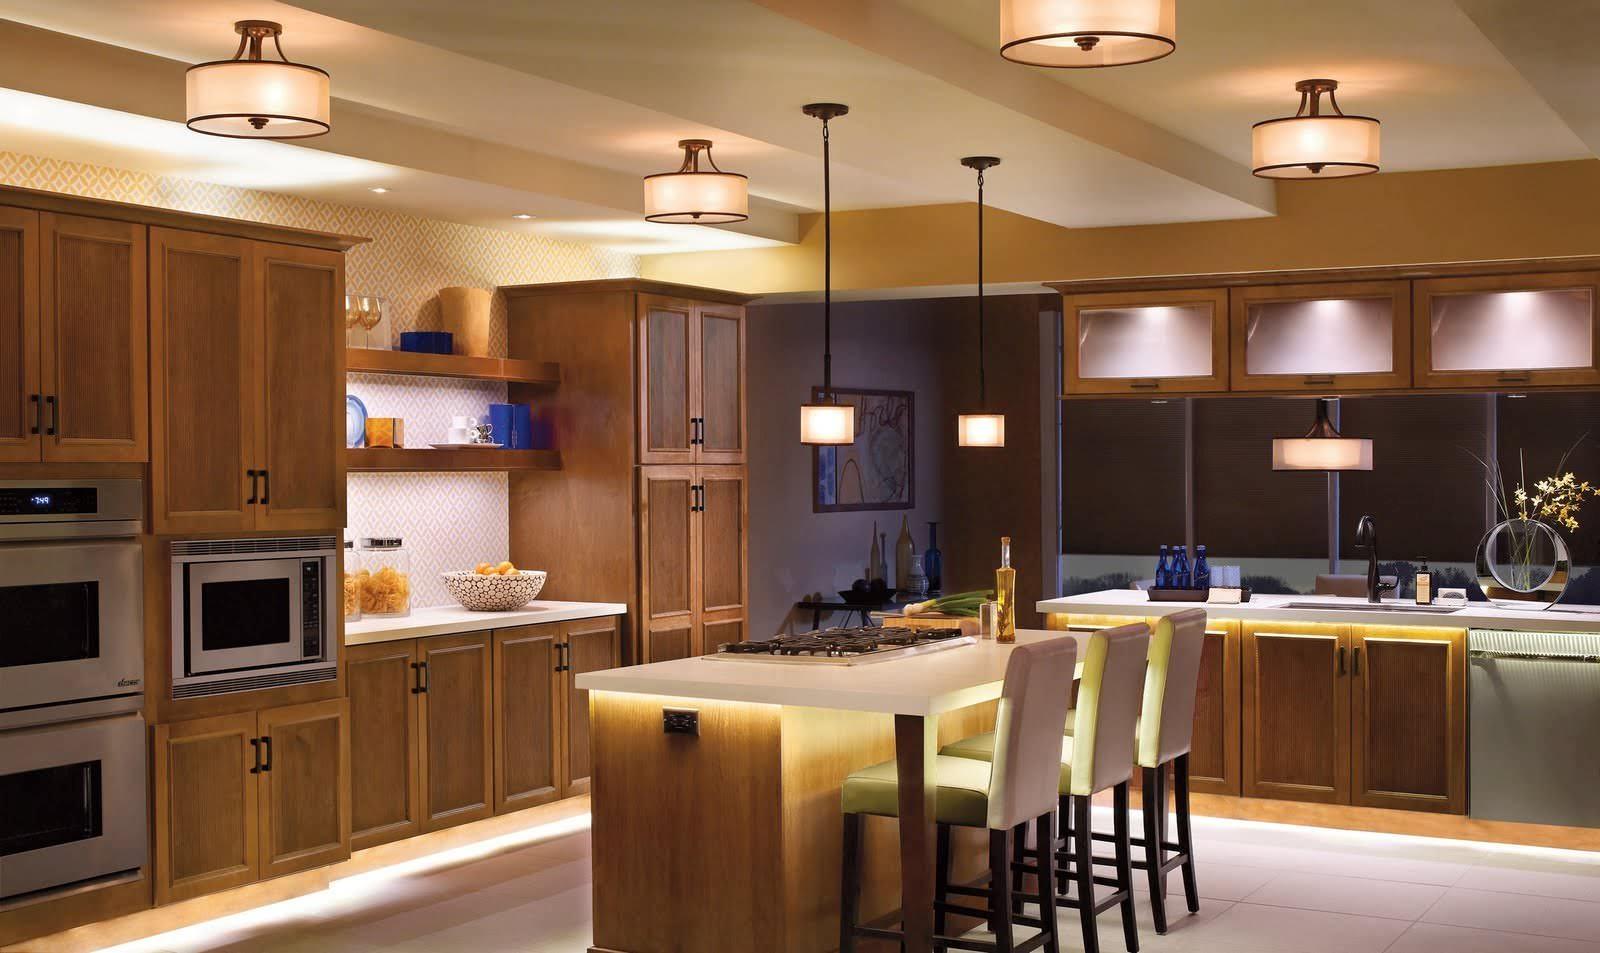 Светильники в стиле модерн также выгодно подчеркнут интерьер кухни